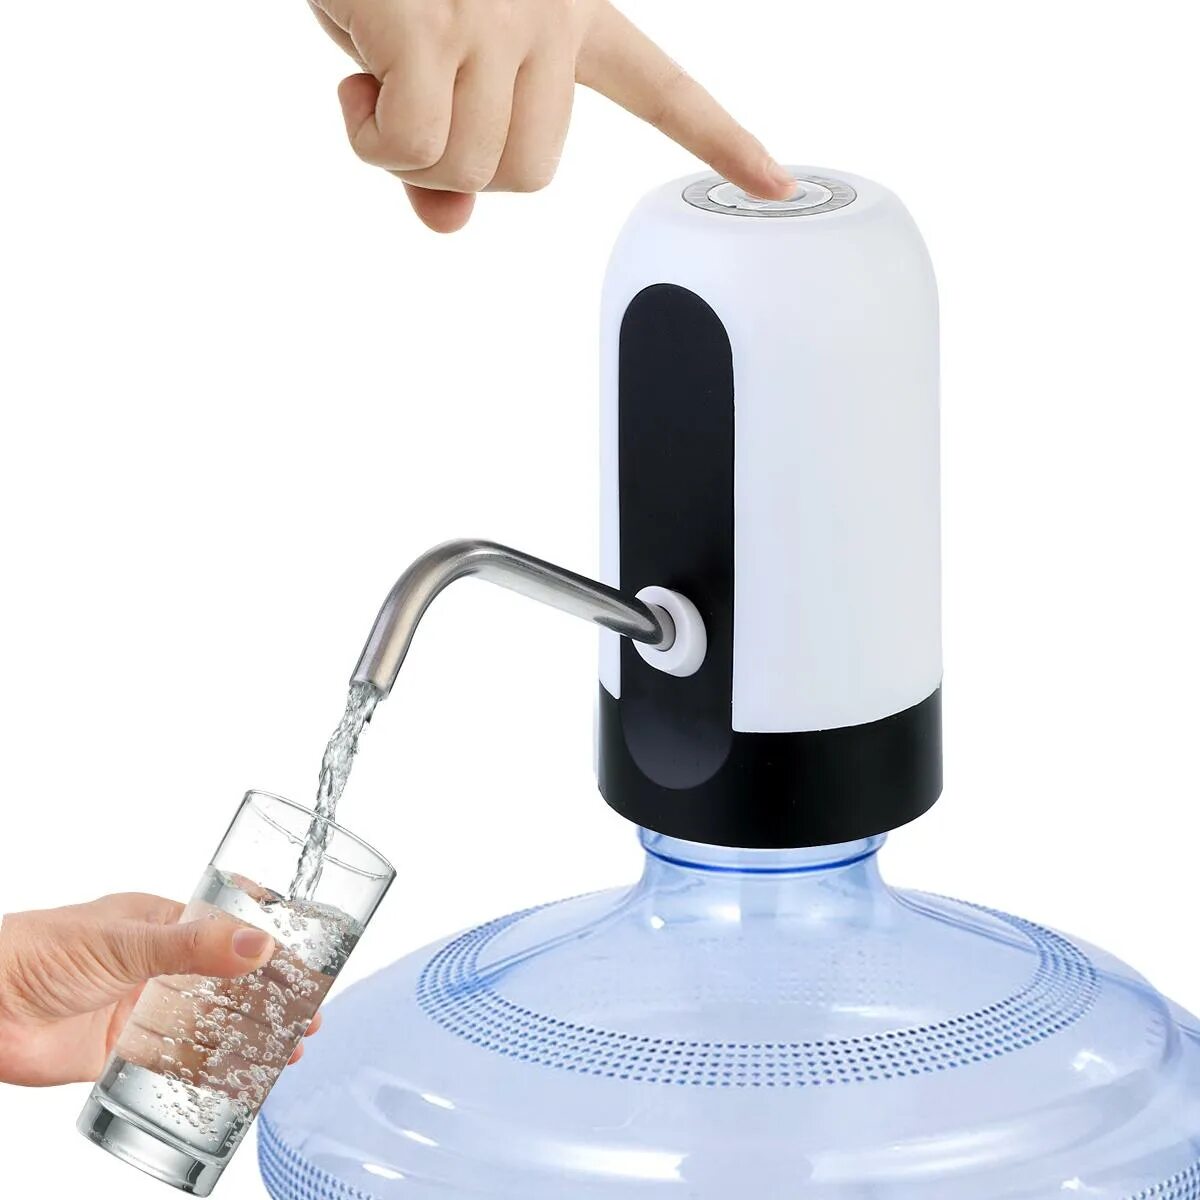 Автоматический насос для воды Automatic Water Dispenser. Помпа аккумуляторная для воды Energy en-008e. Dispenser для воды Pump. Насос для бутылок с водой Automatic Water Dispenser.